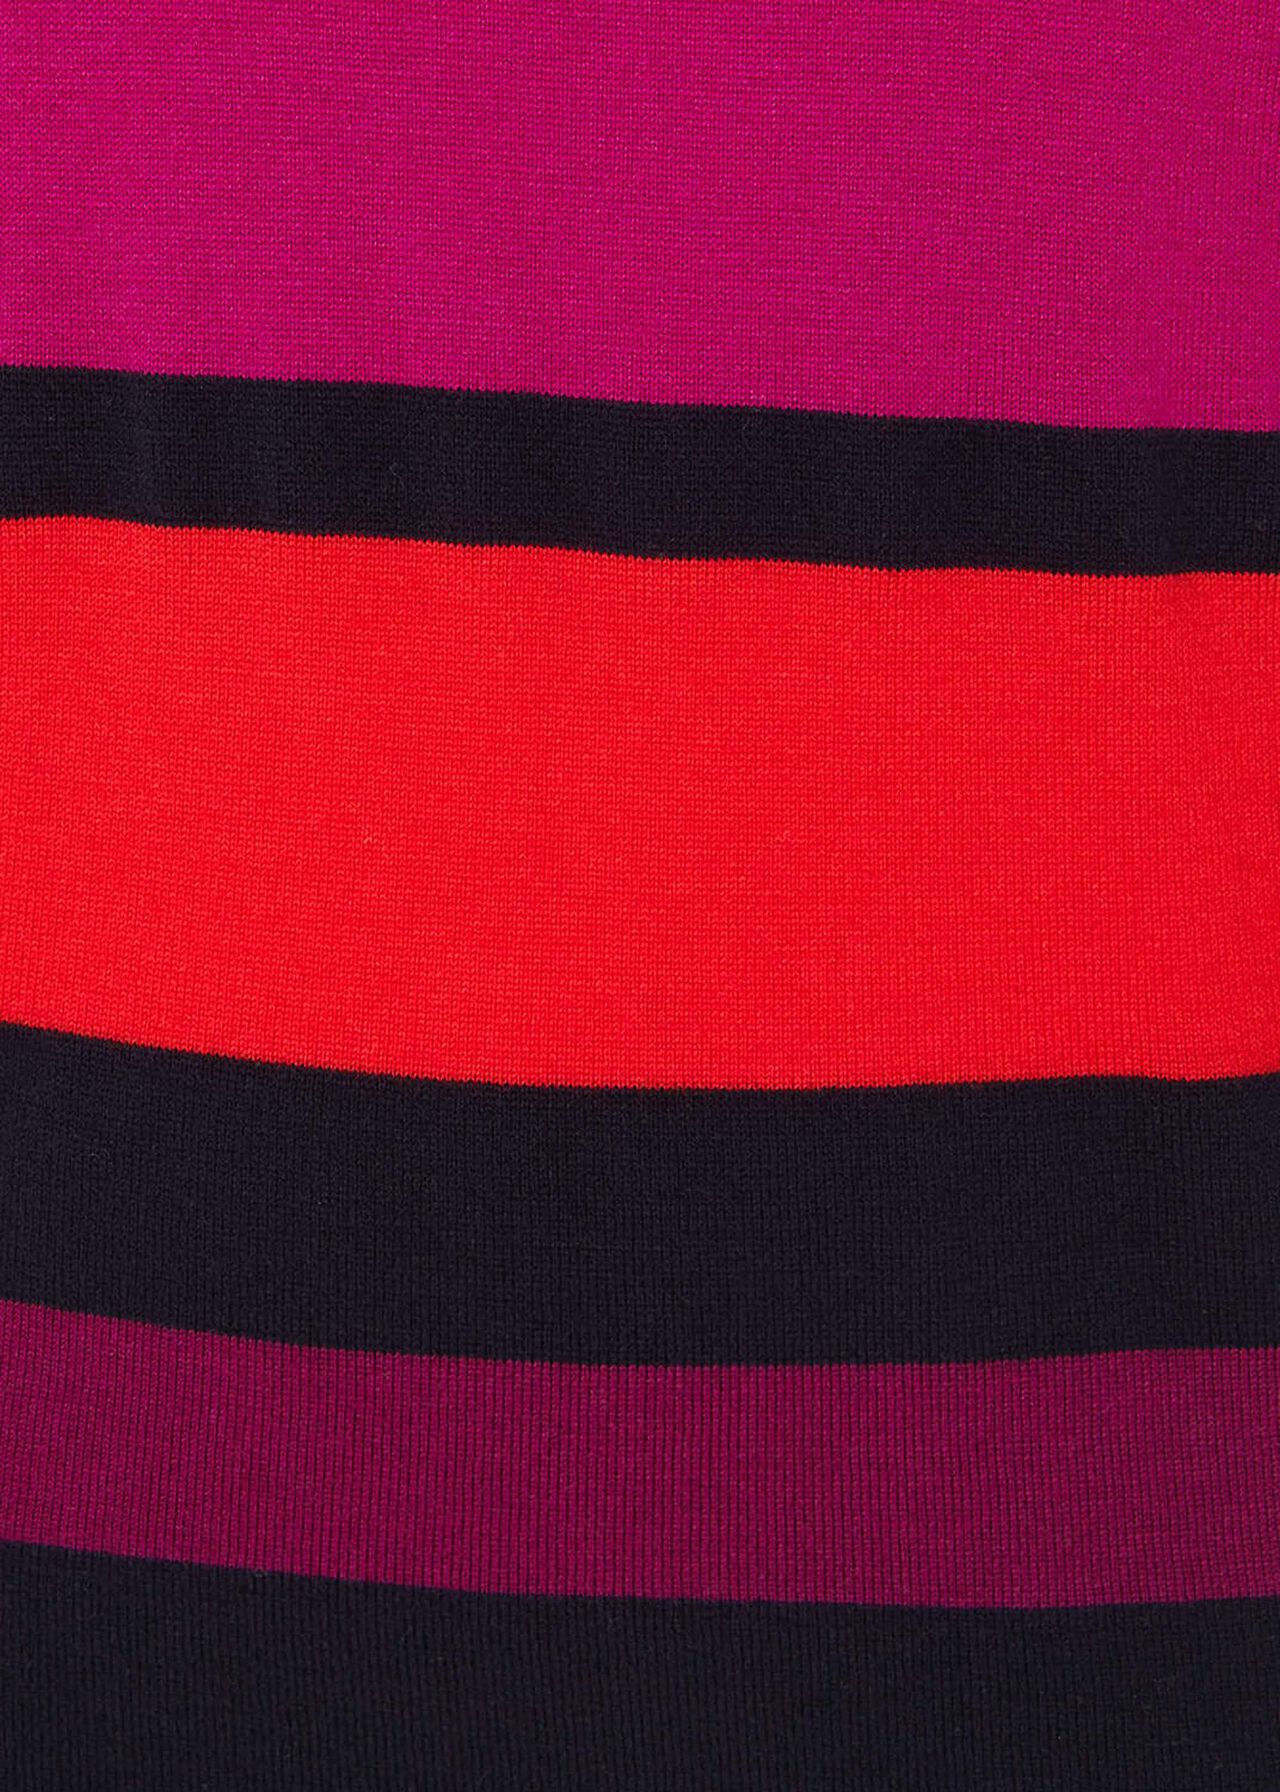 Sabra Stripe Knit Top